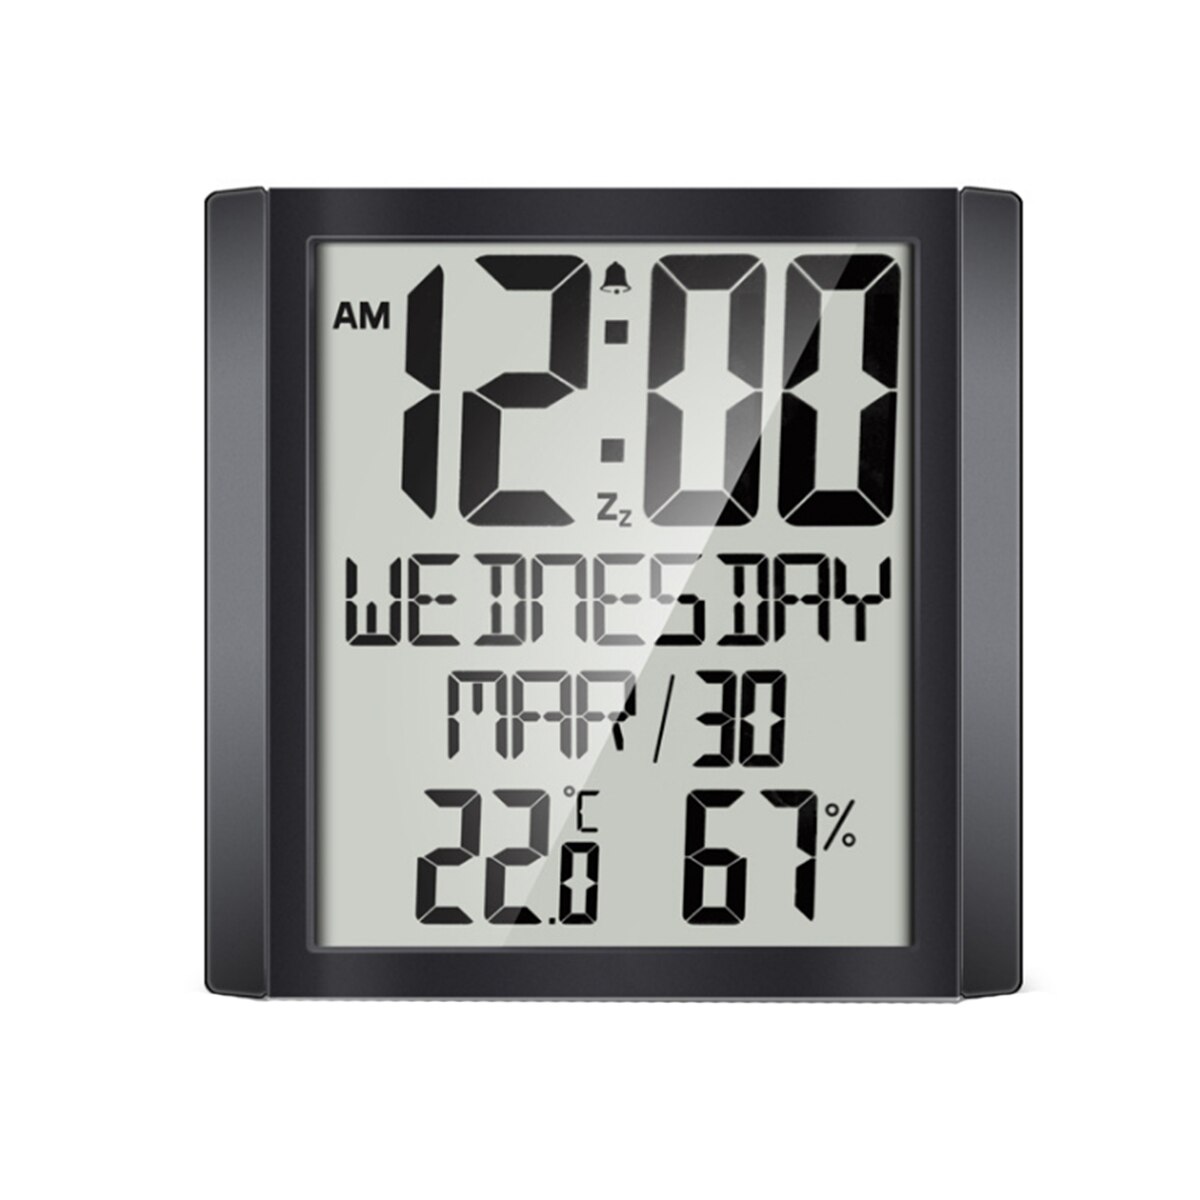 Multifunctionele Wandklok Familie Groot Scherm Digitale Display Wekker Met Datum Vochtigheid Temperatuur Display Home Decor